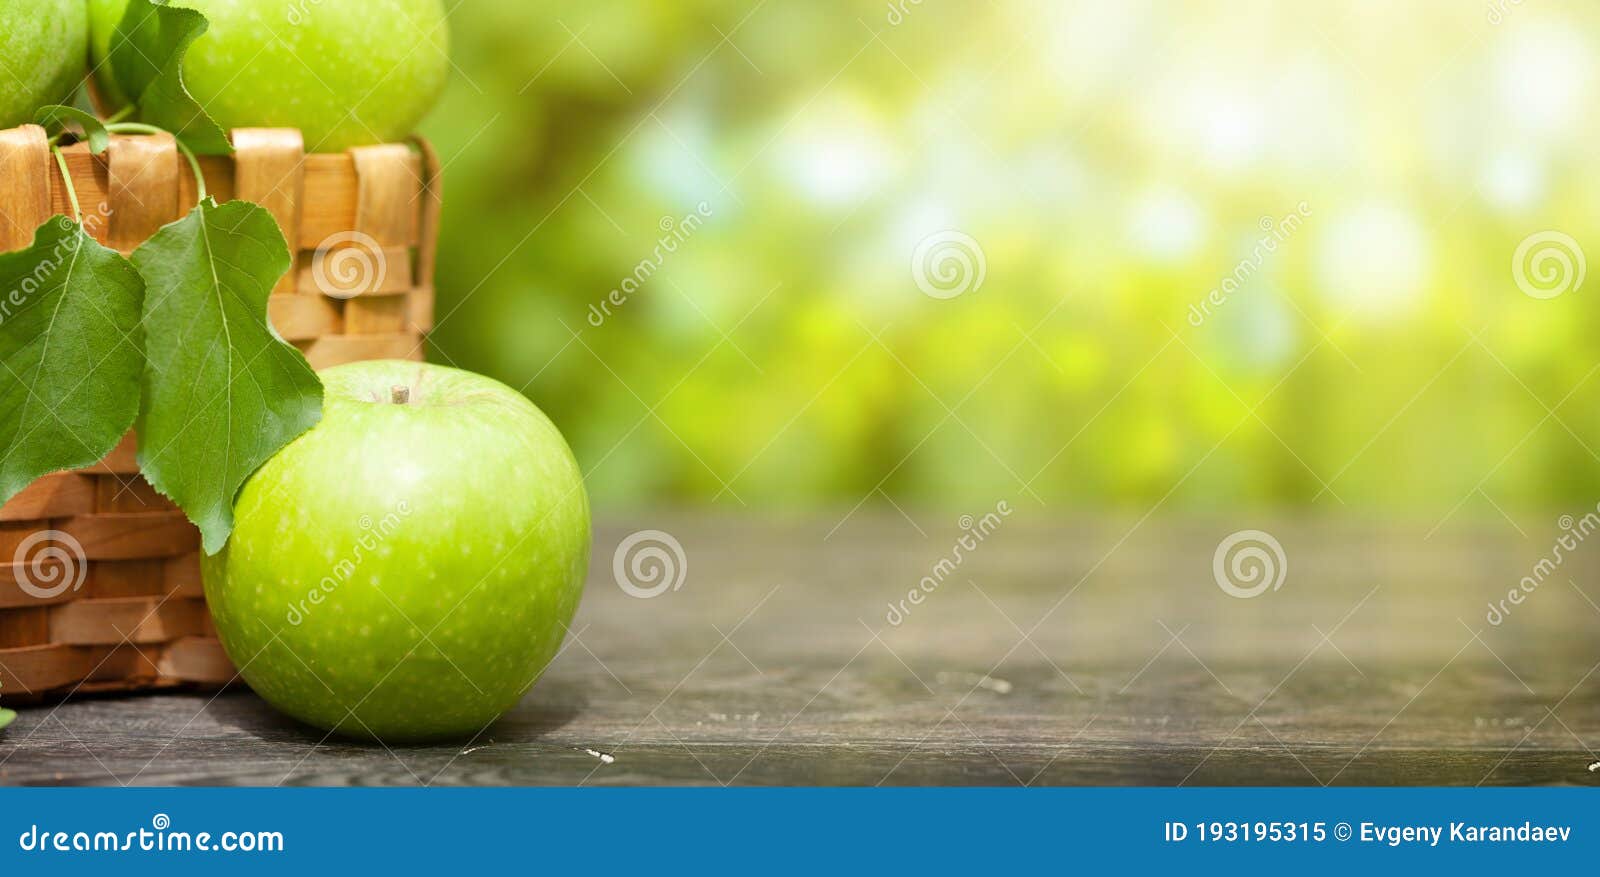 Nadeco ® canoinha manzana verdedauschotefuntumia frutadecoración exóticos 